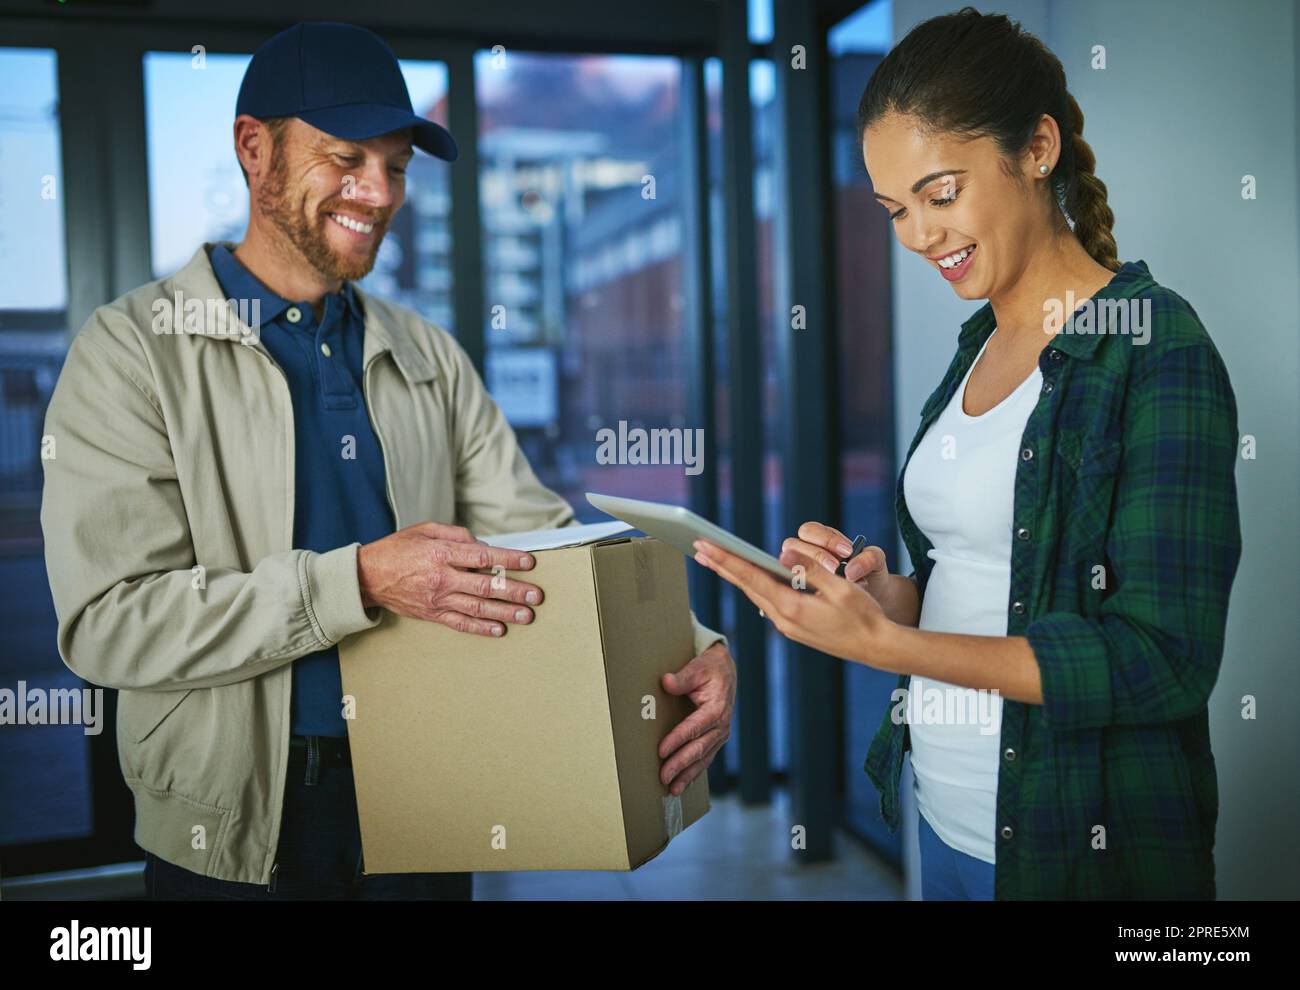 No hay necesidad de papel cuando una firma electrónica va a ser útil. Una mujer joven usando una tableta digital para firmar un paquete de un hombre de parto. Foto de stock